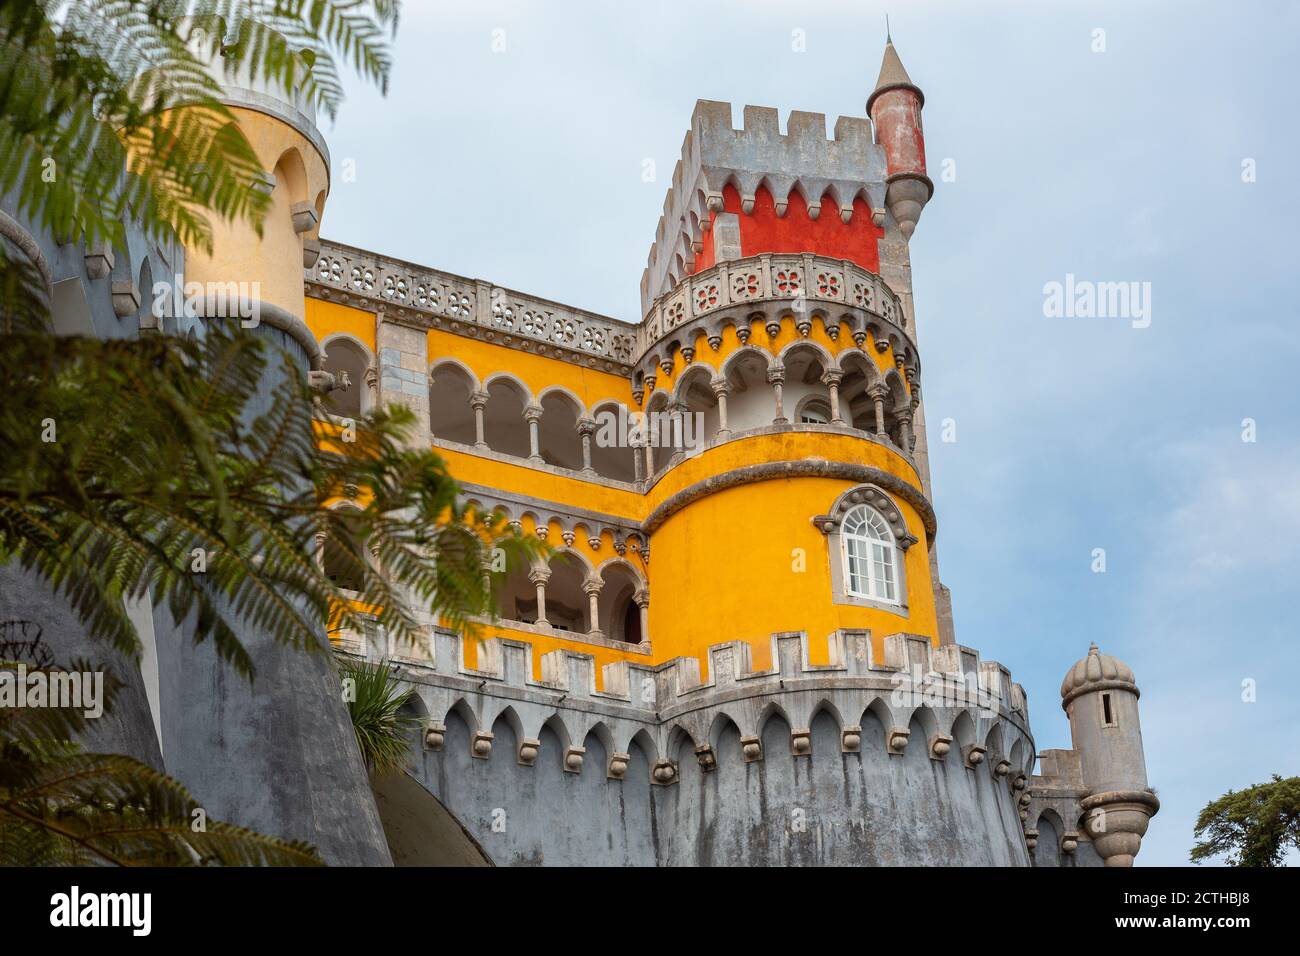 Nationalpalast von Pena, Portugal. Berühmte Burg in der Nähe der Stadt Sintra, einer der am meisten besuchten Sehenswürdigkeiten in Portugal. Stockfoto